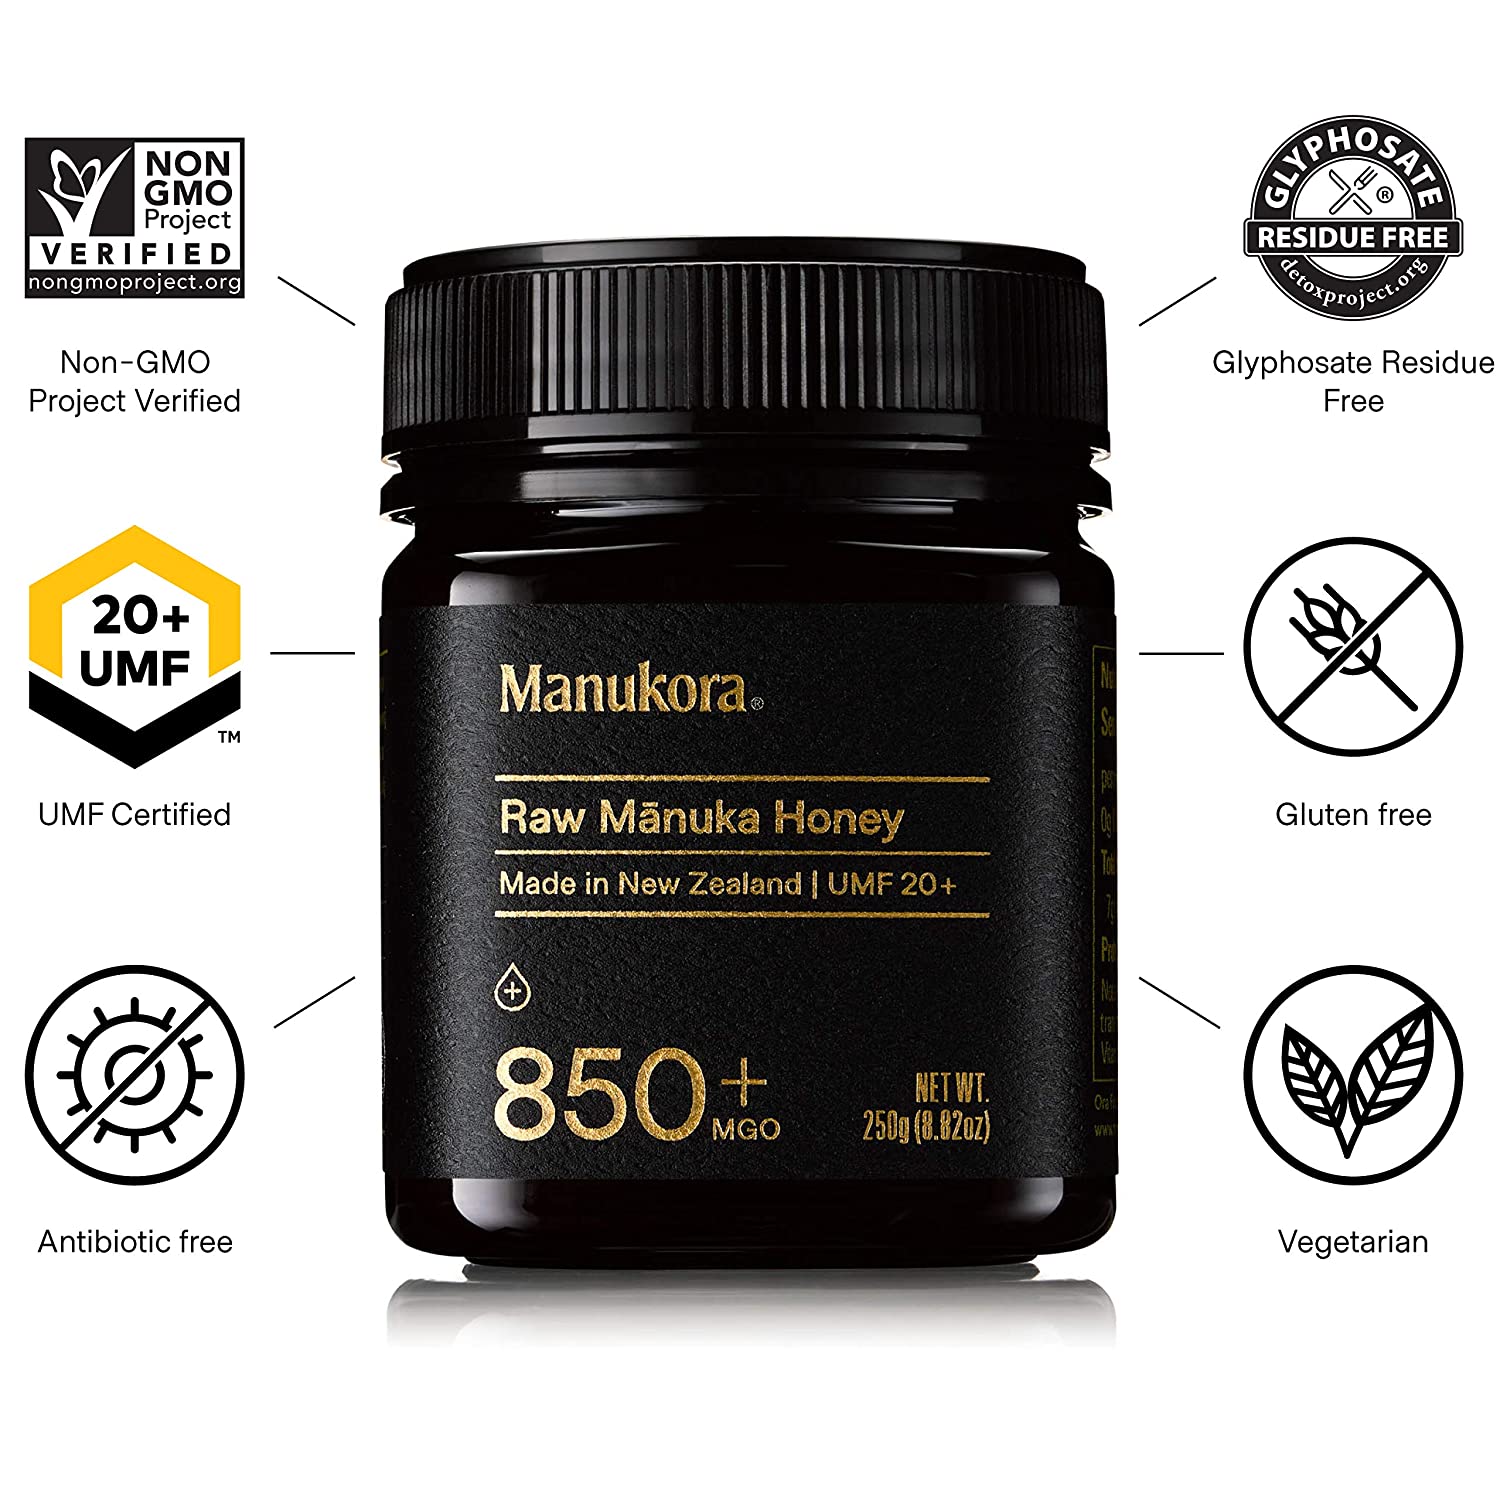 Manukora UMF 20+/MGO 850+ Raw Manuka Honey - 250g/8.8oz-2